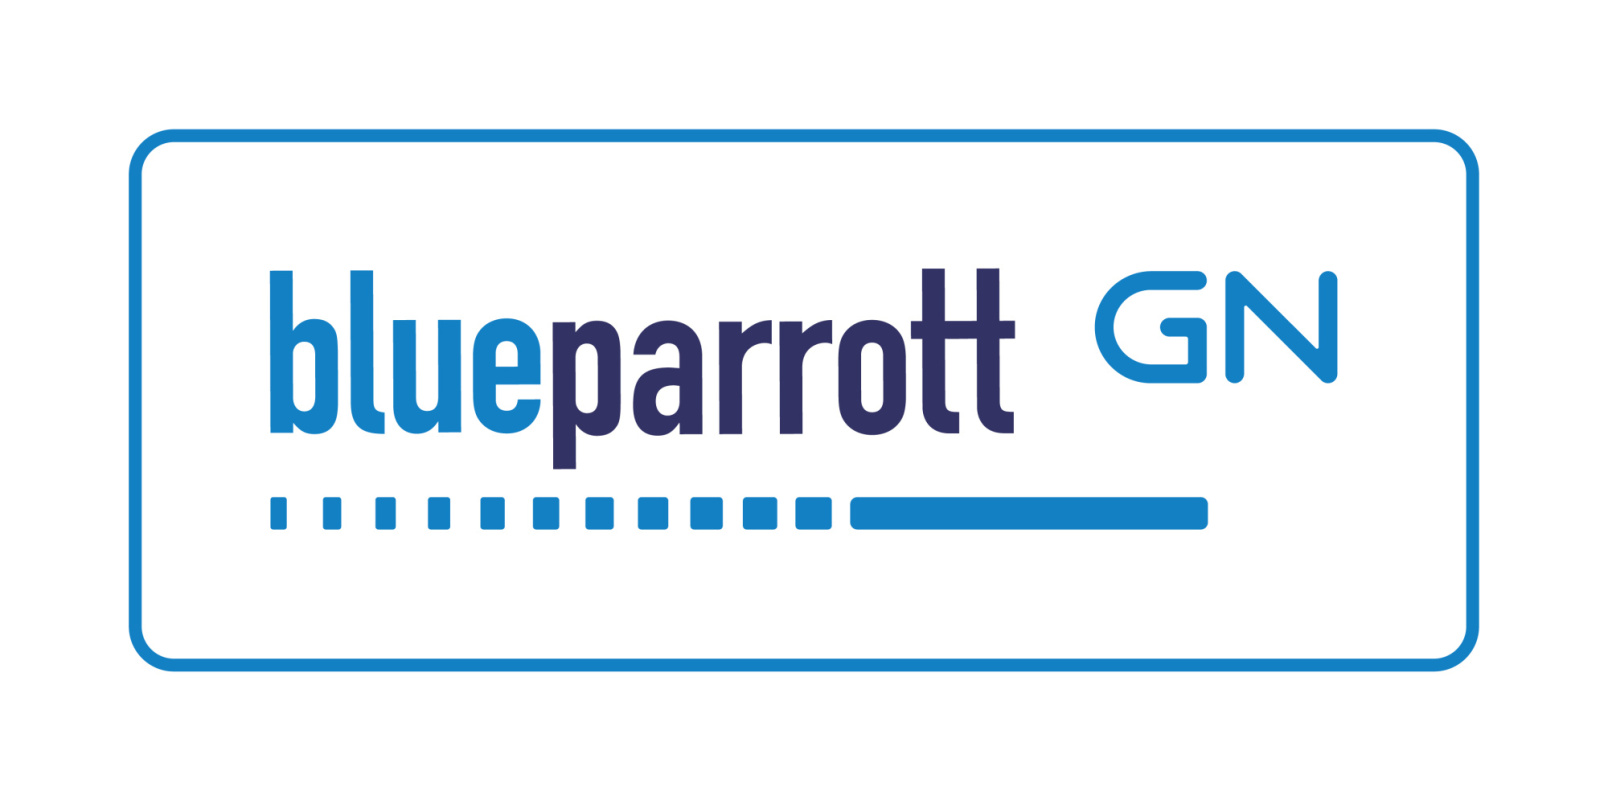 BlueParrott